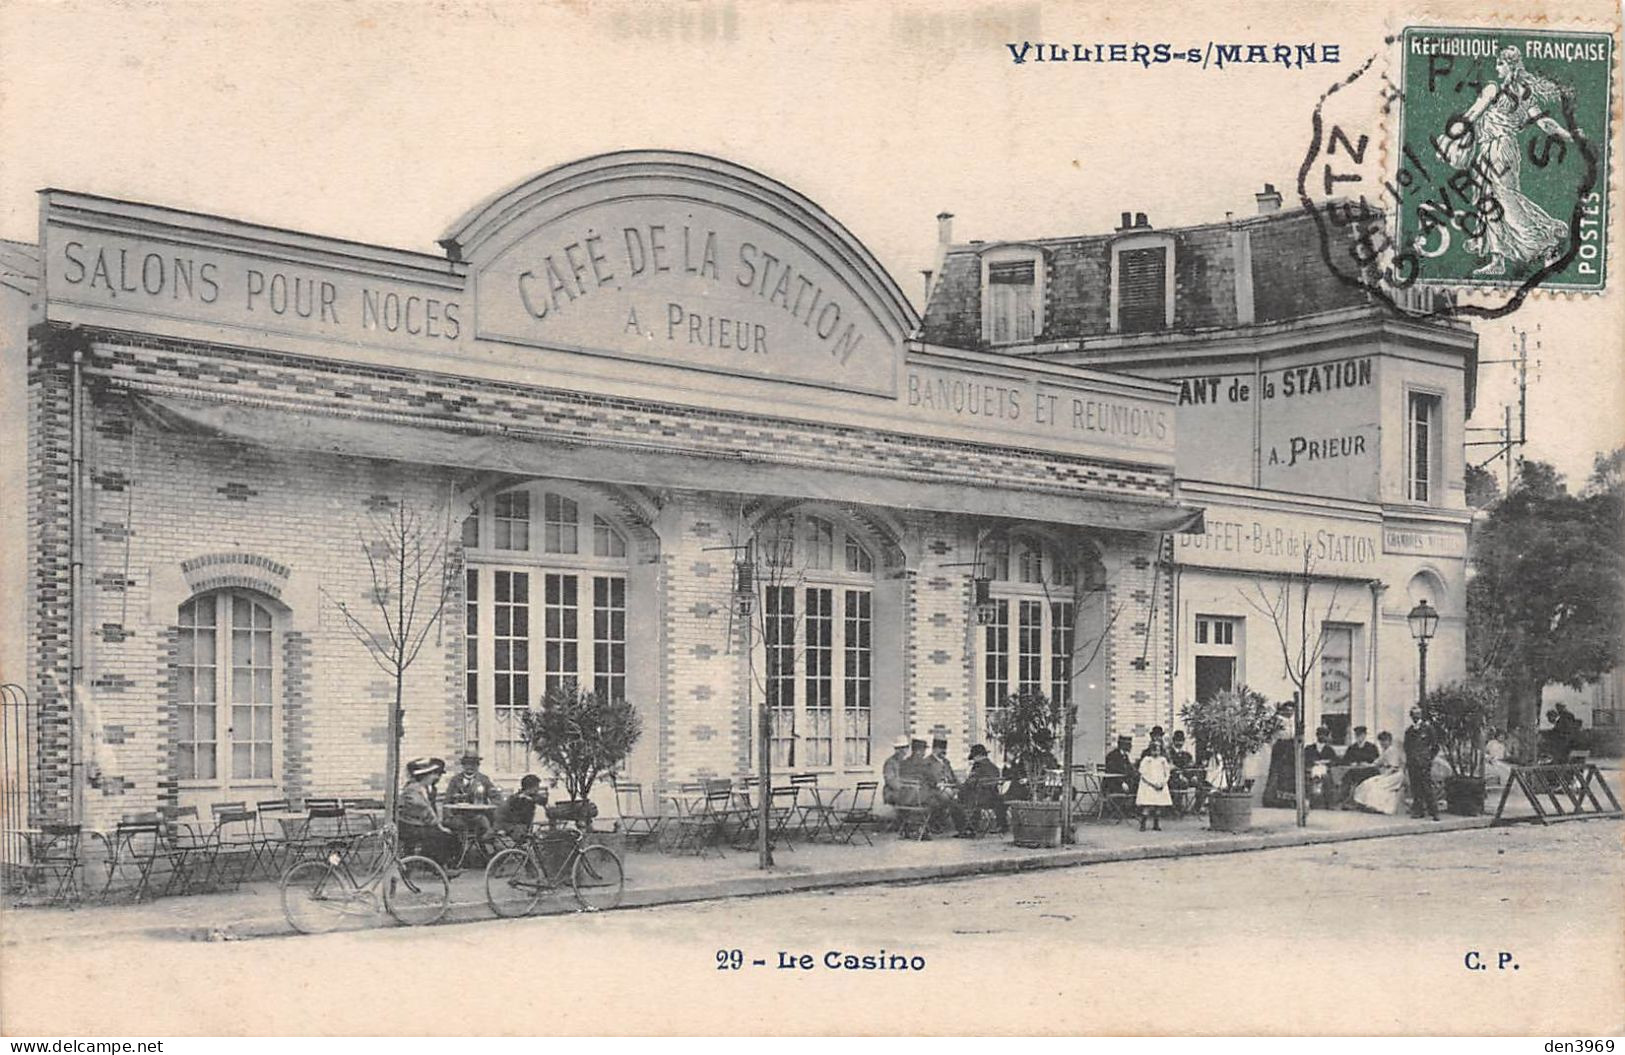 VILLIERS-sur-MARNE (Val-de-Marne) - Le Casino - Café De La Station A. Prieur - Voyagé 1909 (2 Scans) - Villiers Sur Marne